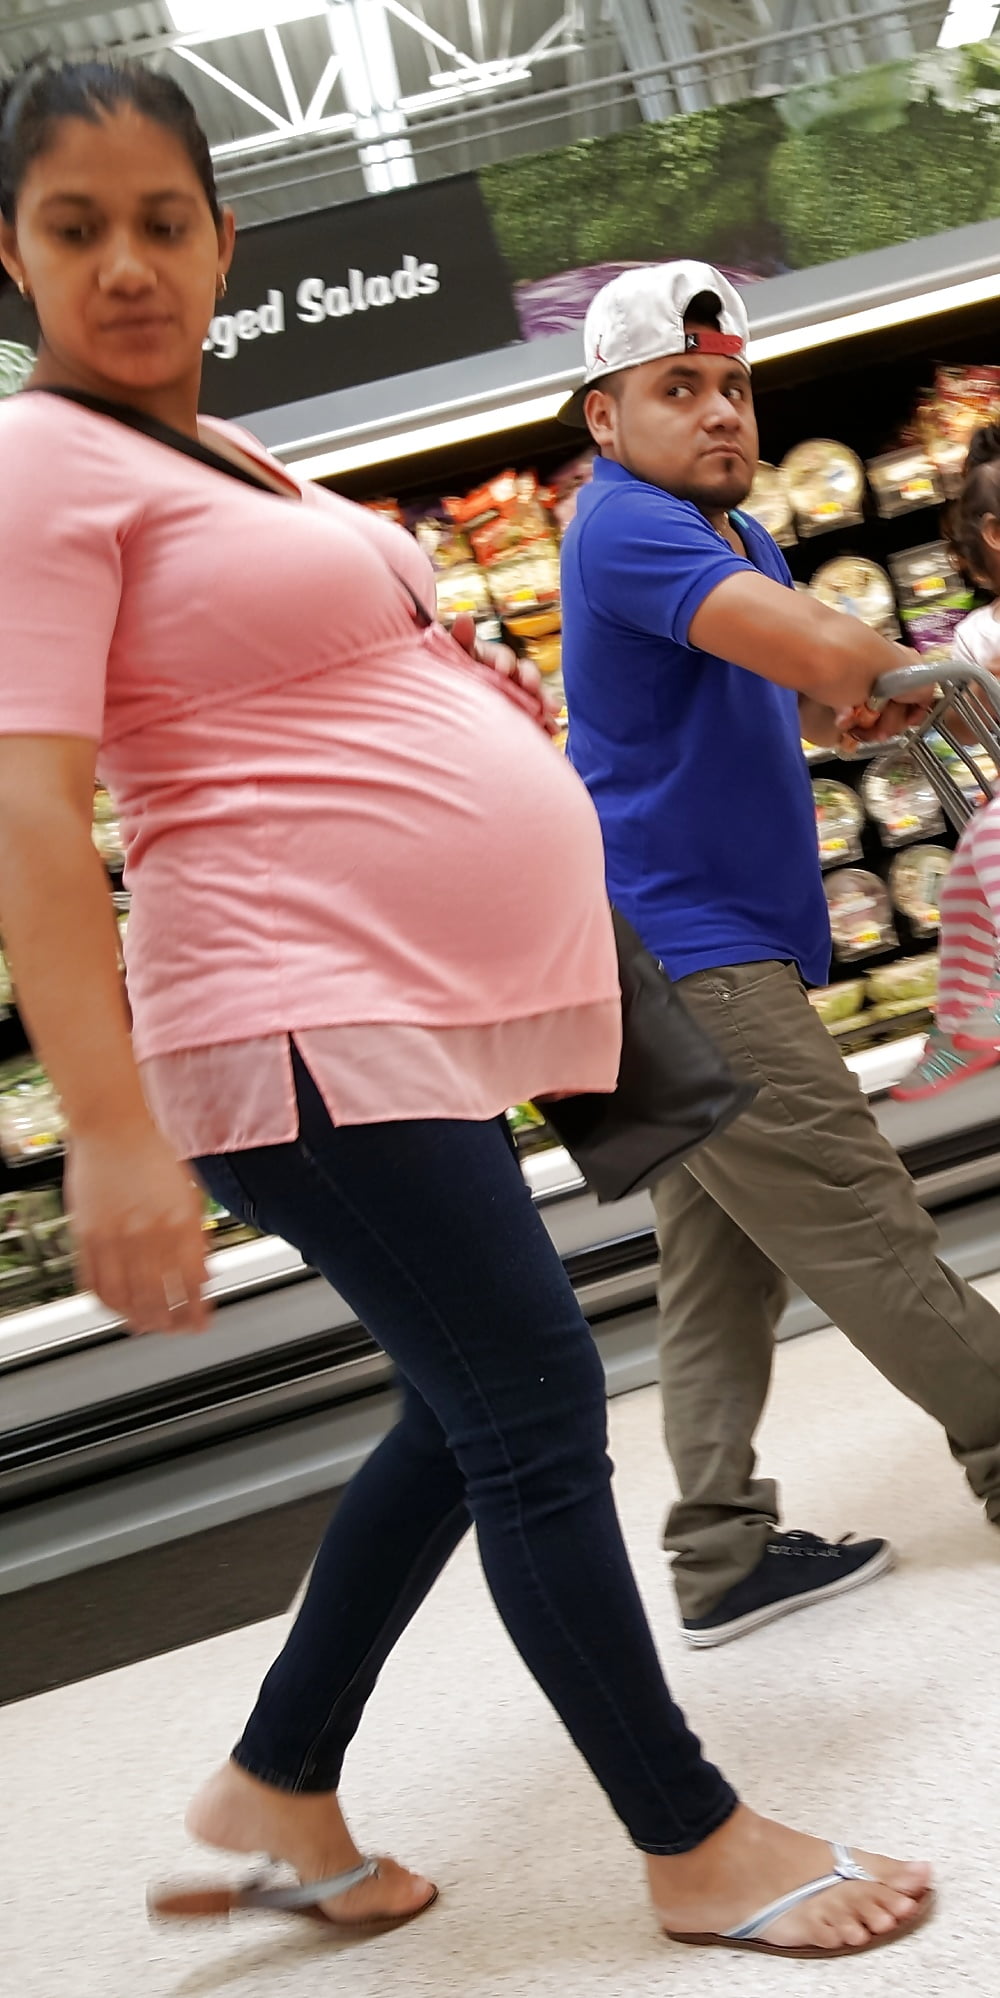 Wal-Mart Creep shots Pregnant Latina mom (7/14)